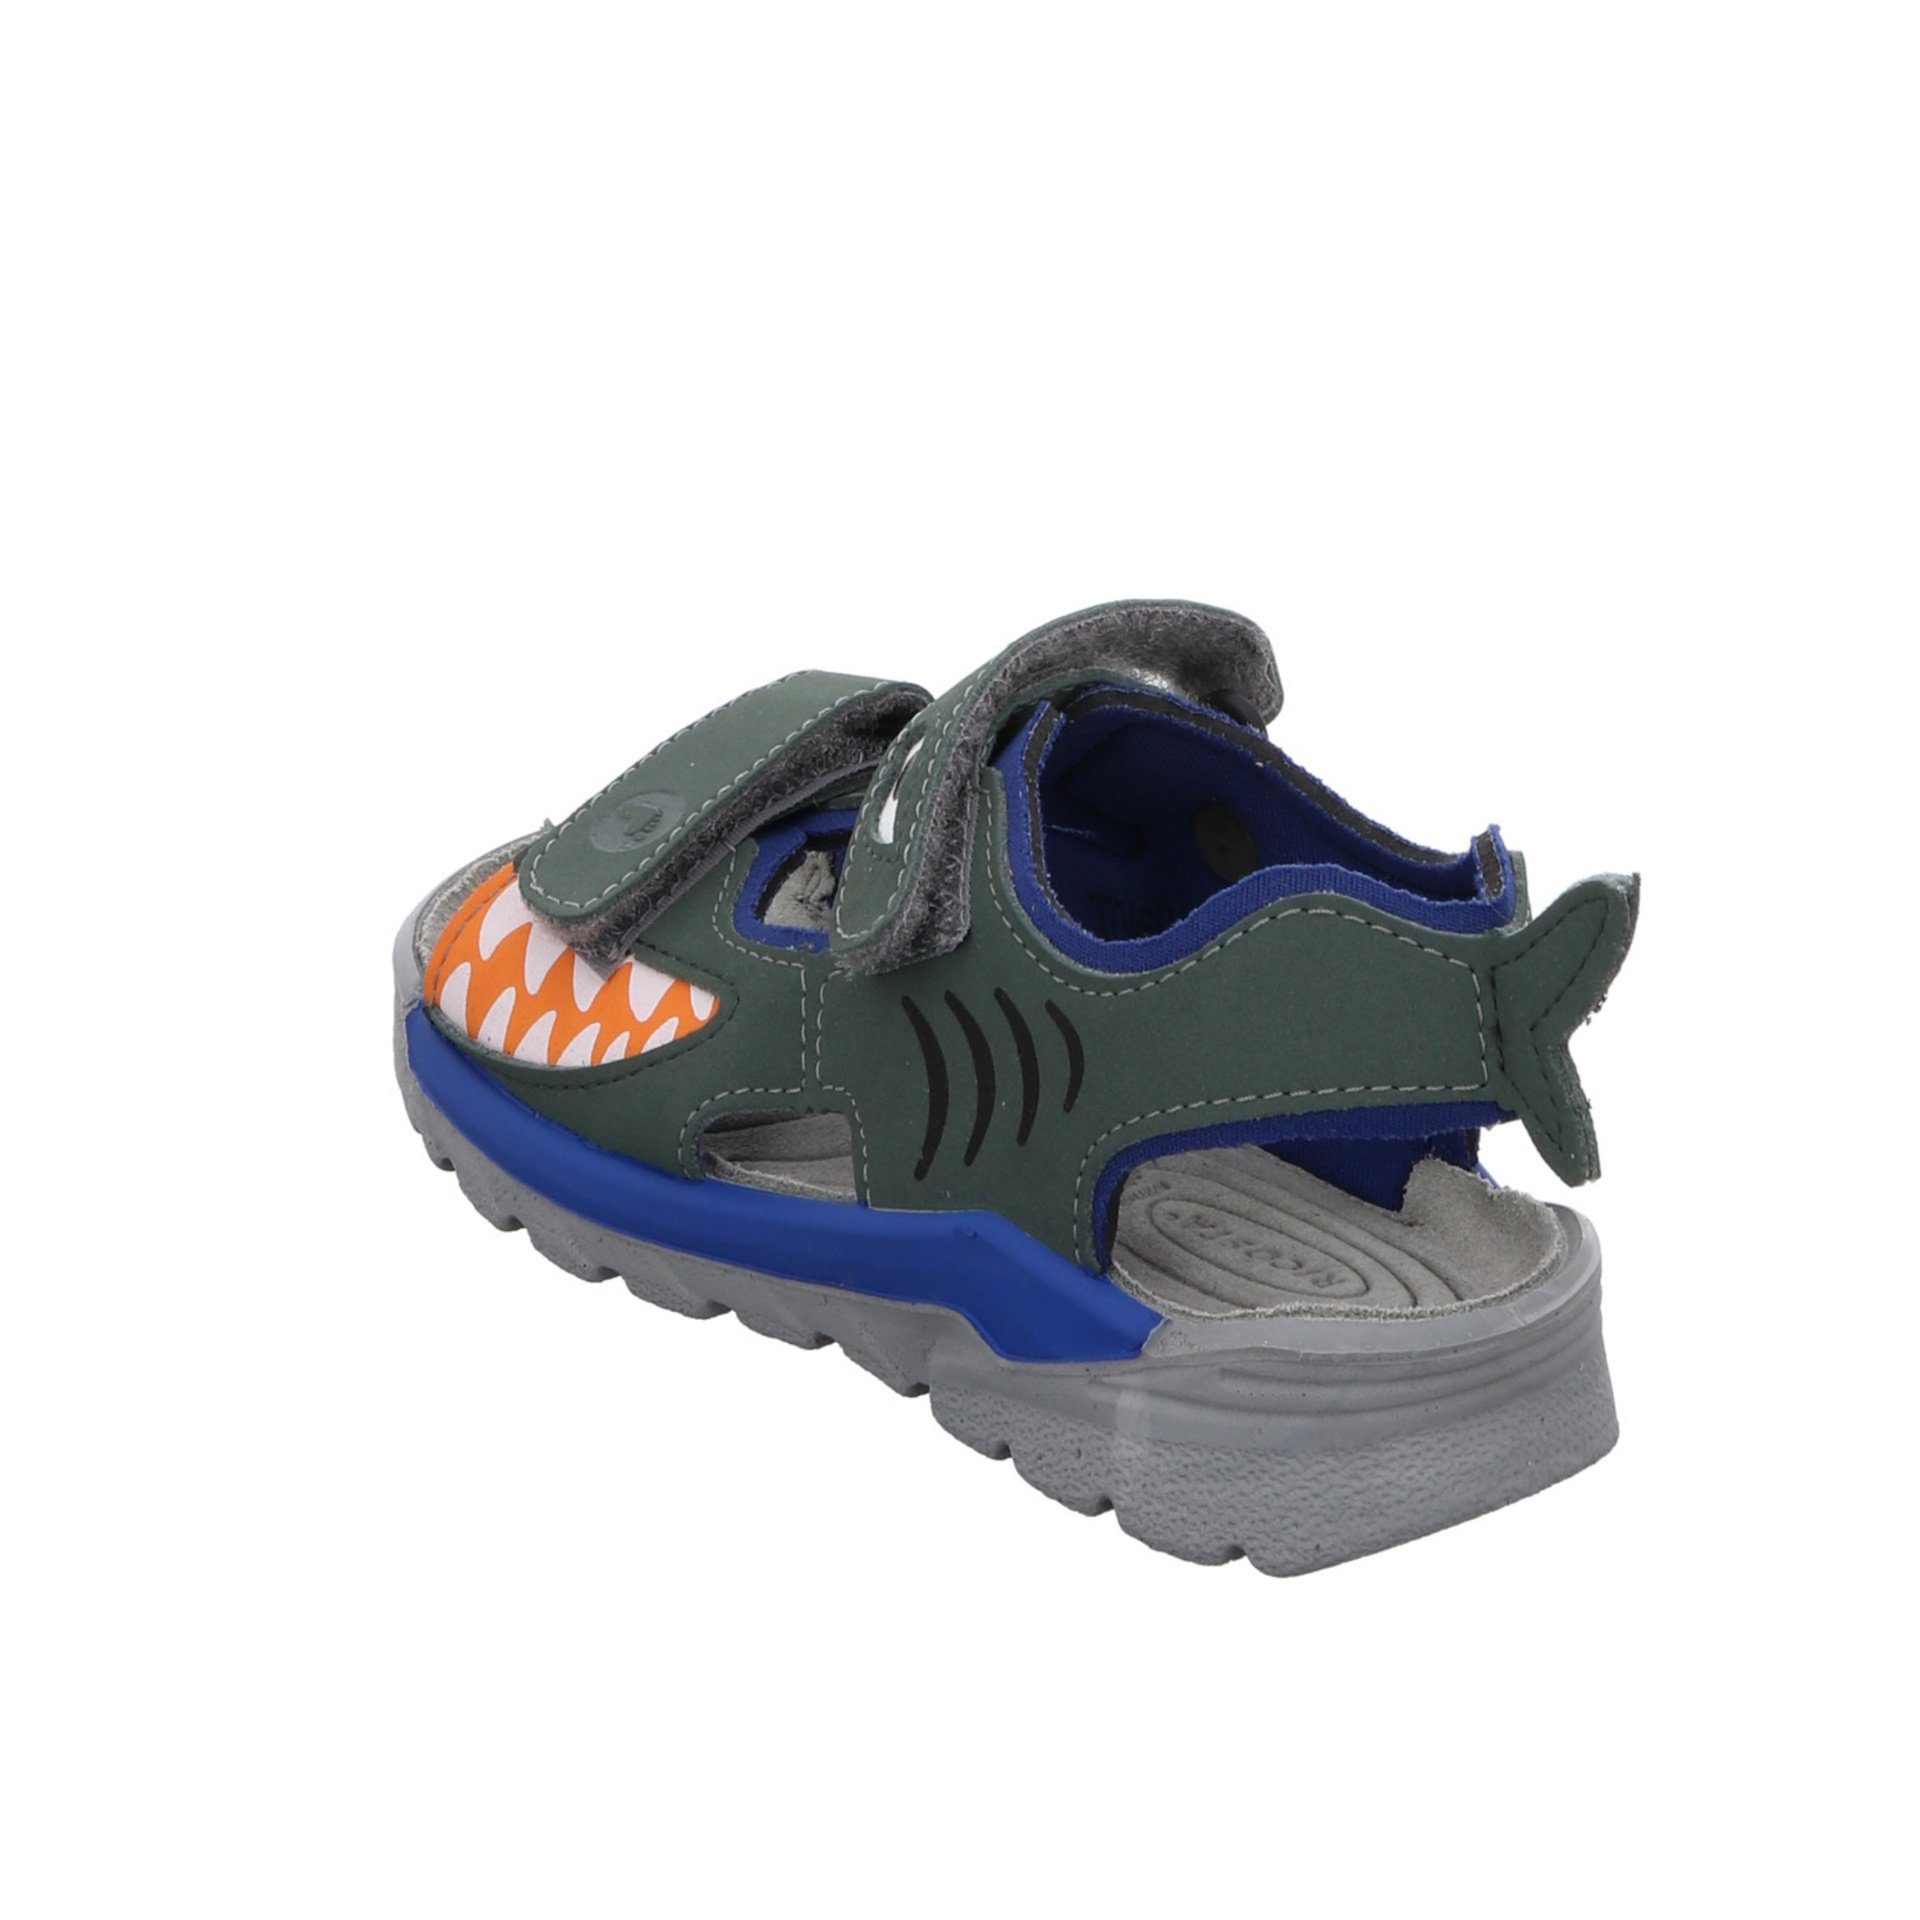 Ricosta Jungen Shark Kinderschuhe Sandale Sandalen Textil Sandale grün Schuhe